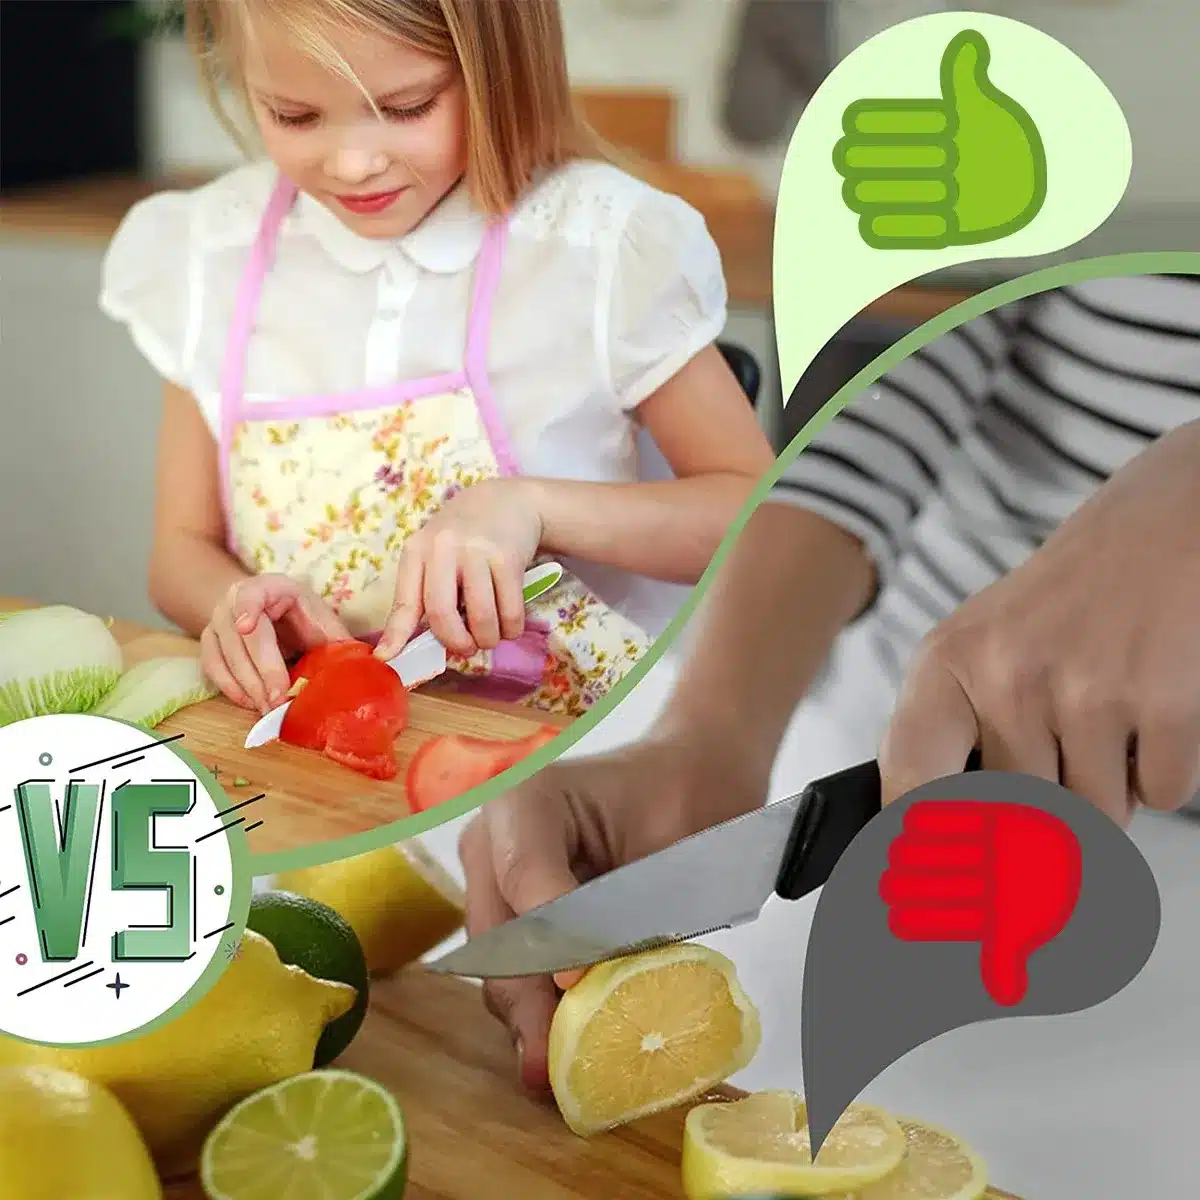 Une fille utilise le Couteau Enfant - Ensemble de 13 Outils de Cuisine Adaptés aux Enfants pour hacher des légumes sur une planche à découper.